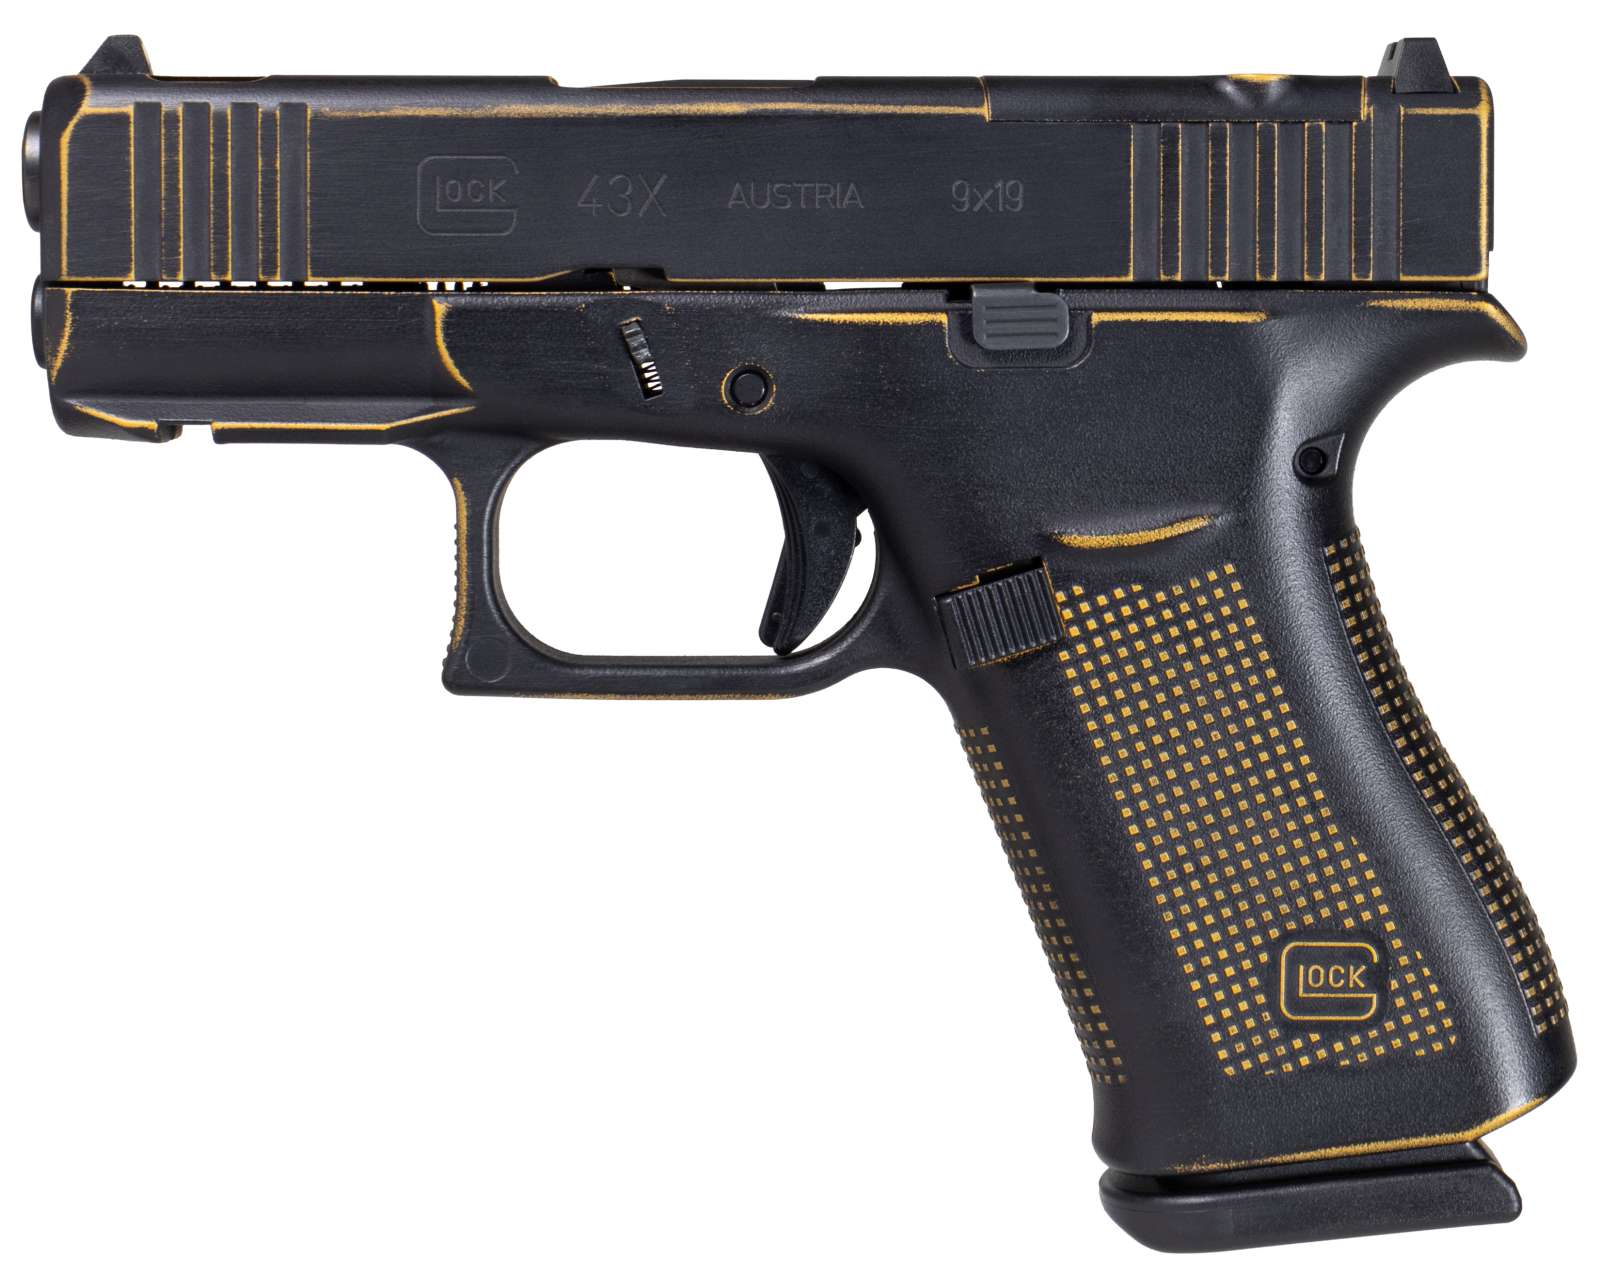 Glock 43X MOS "Stinger" Black / Gold 9mm 3.4" Barrel 10-Rounds Ported Slide